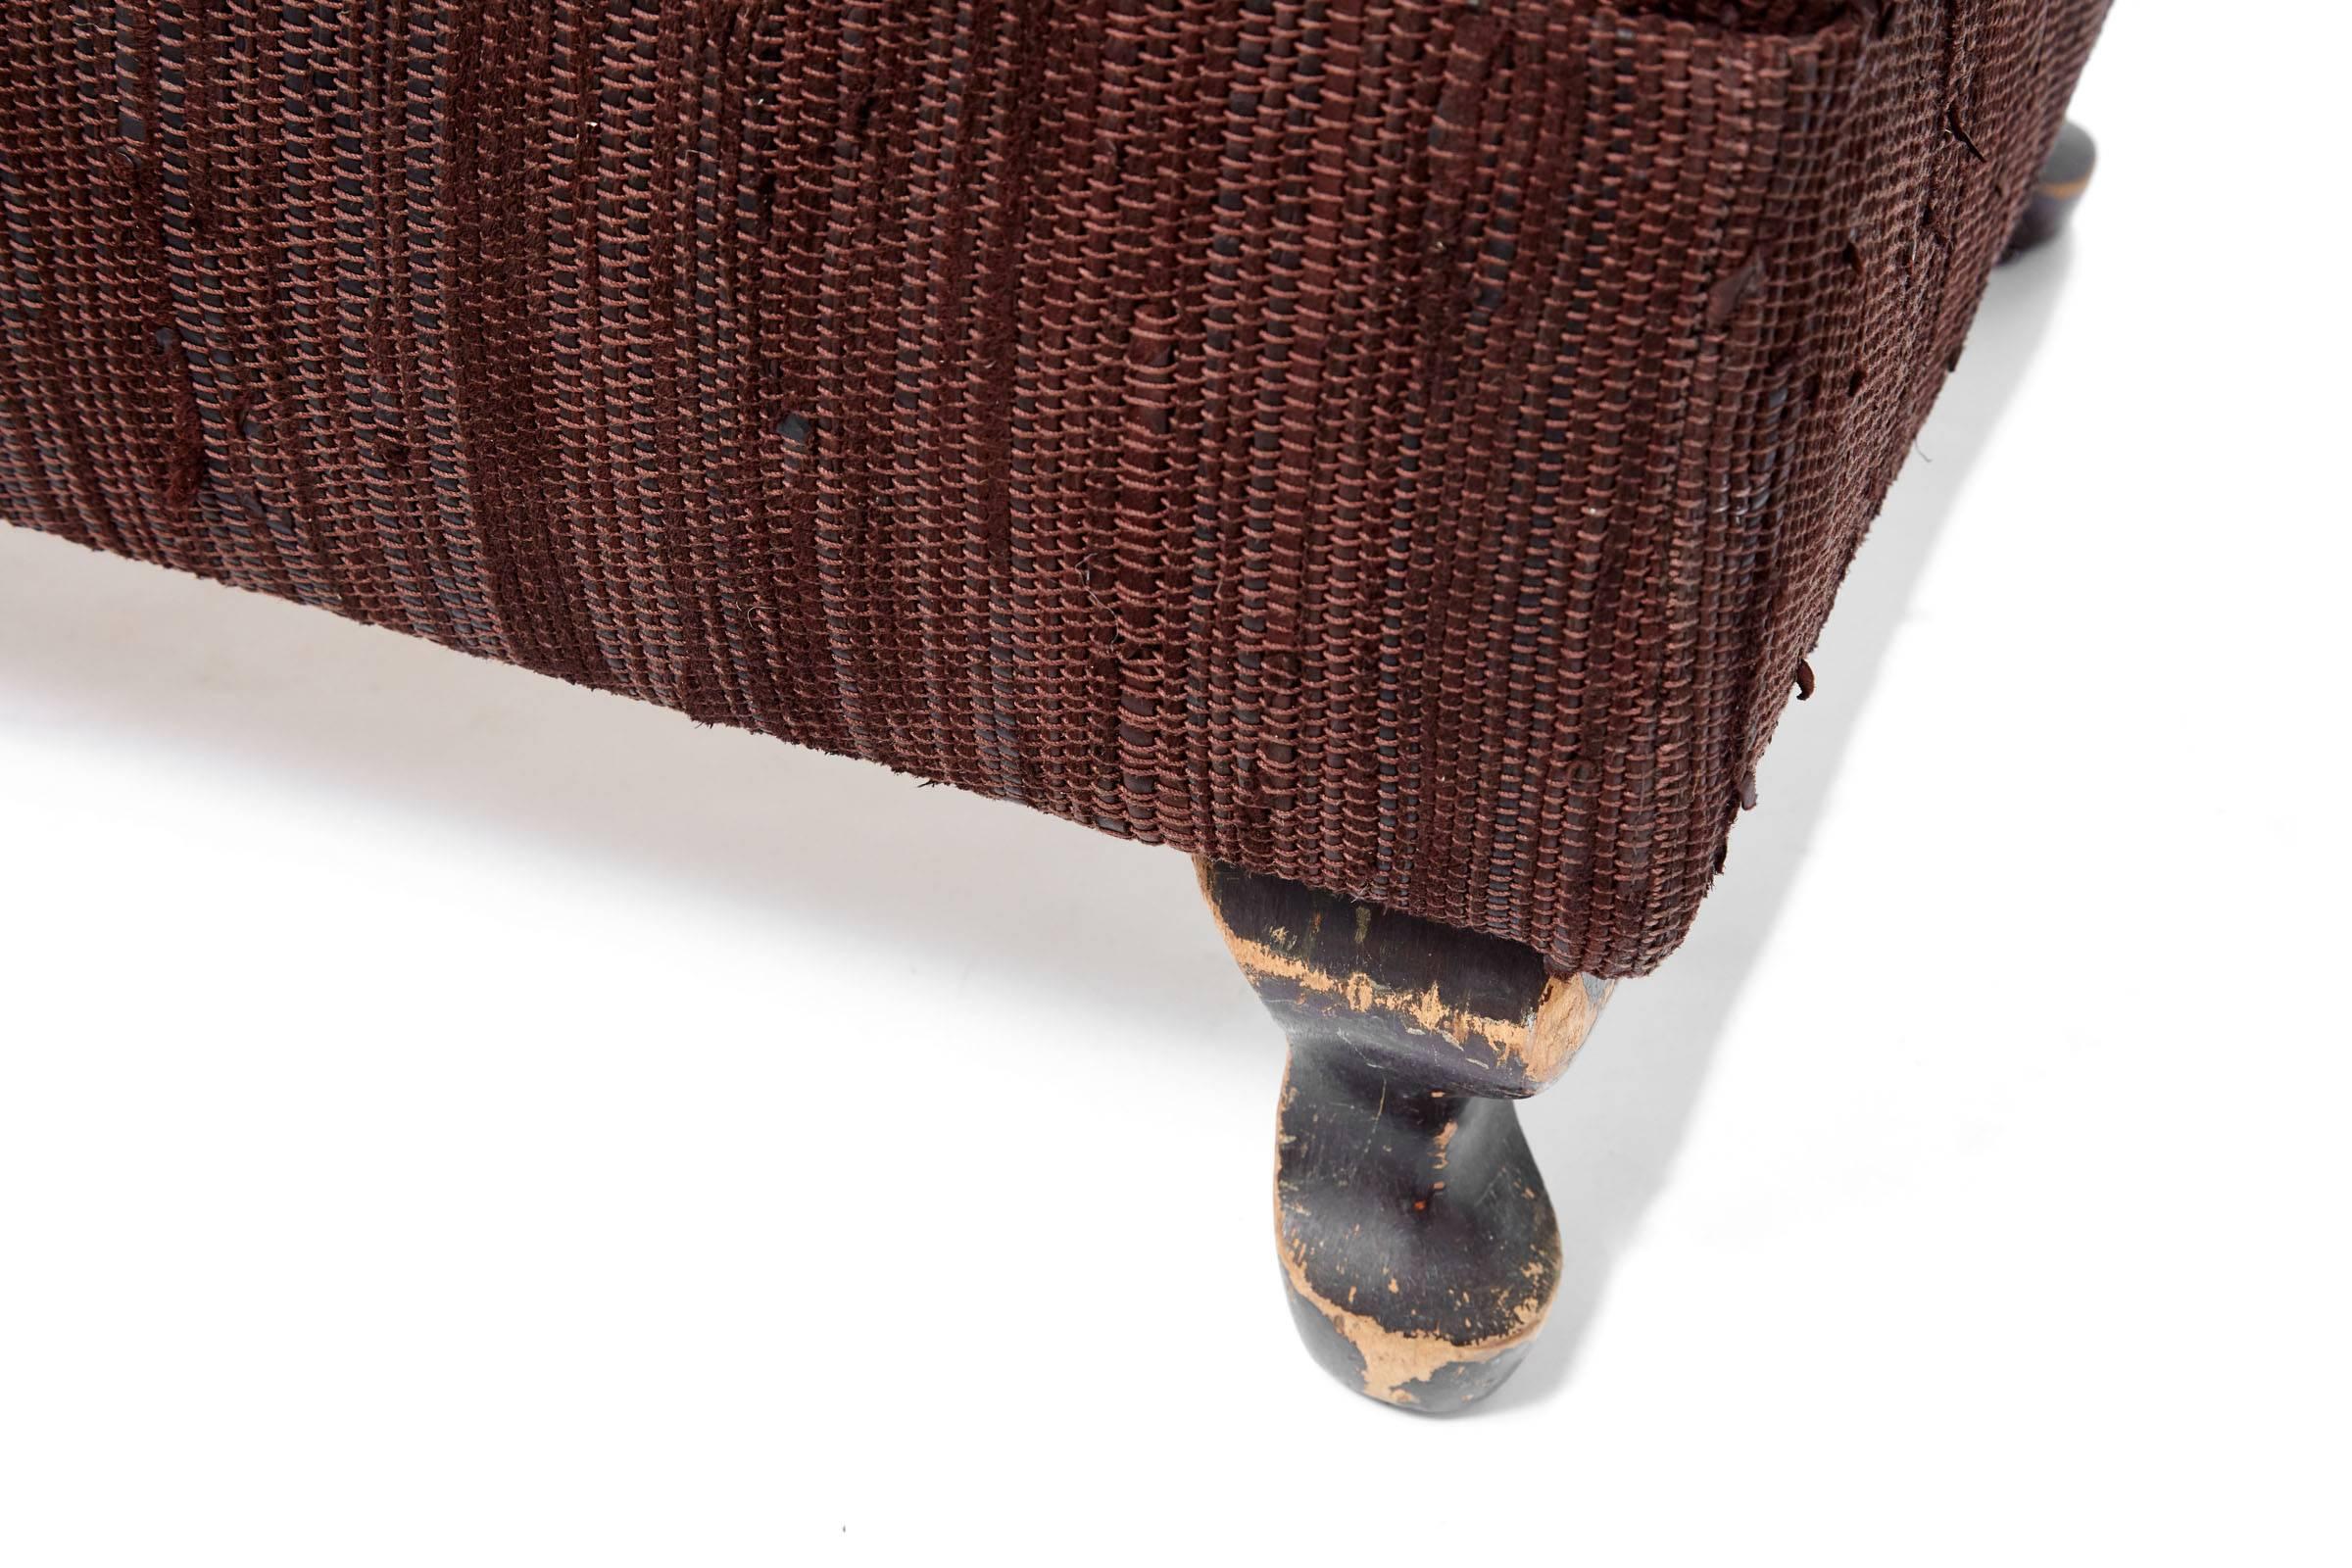 21st Century Woven Leather Ottoman on 19th Century Wooden Legs 1